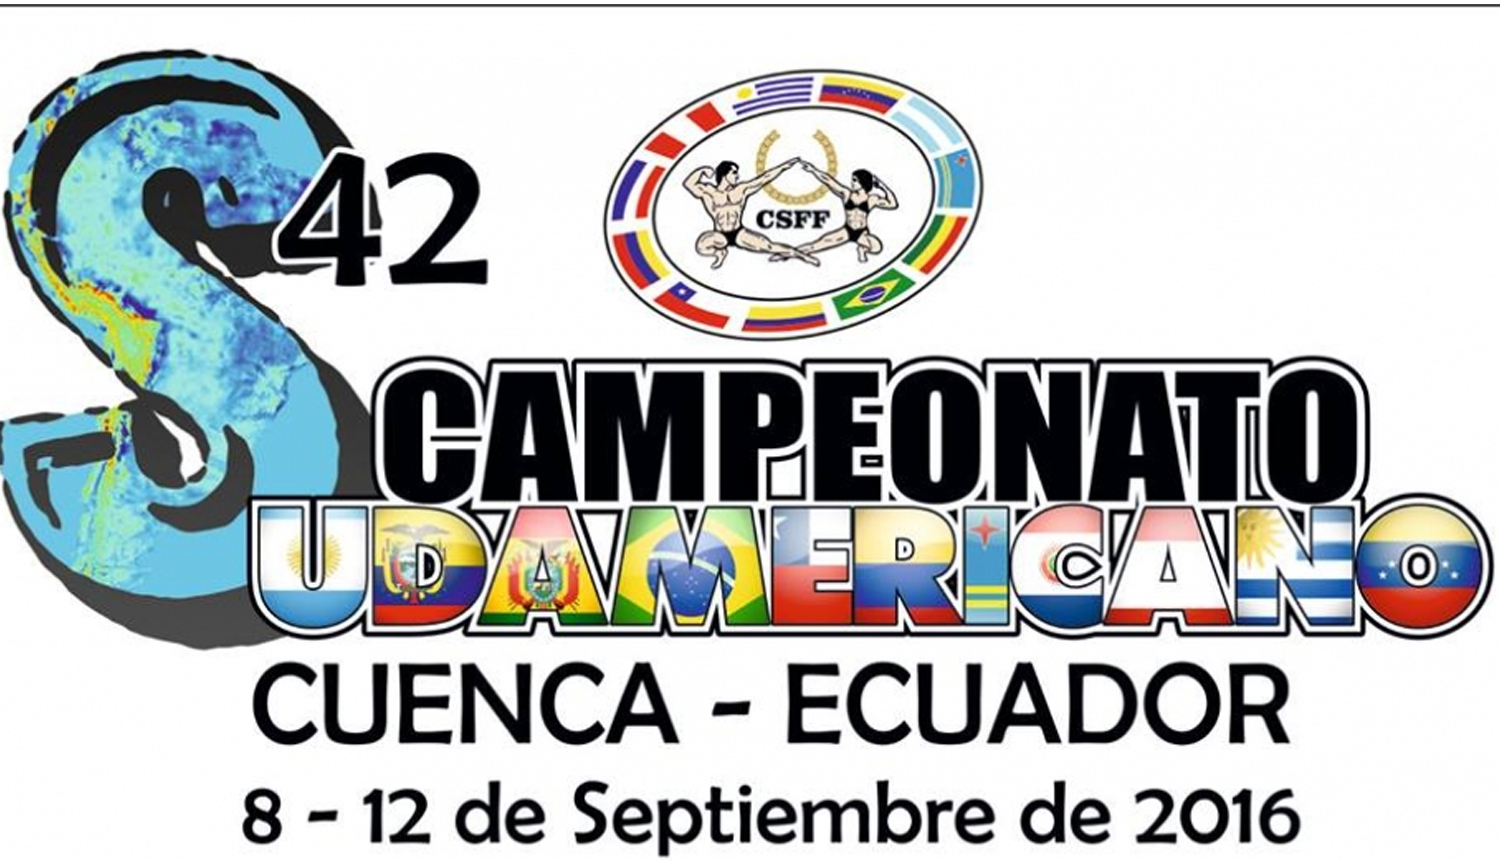 Invitación oficial al Campeonato Sudamericano 2016